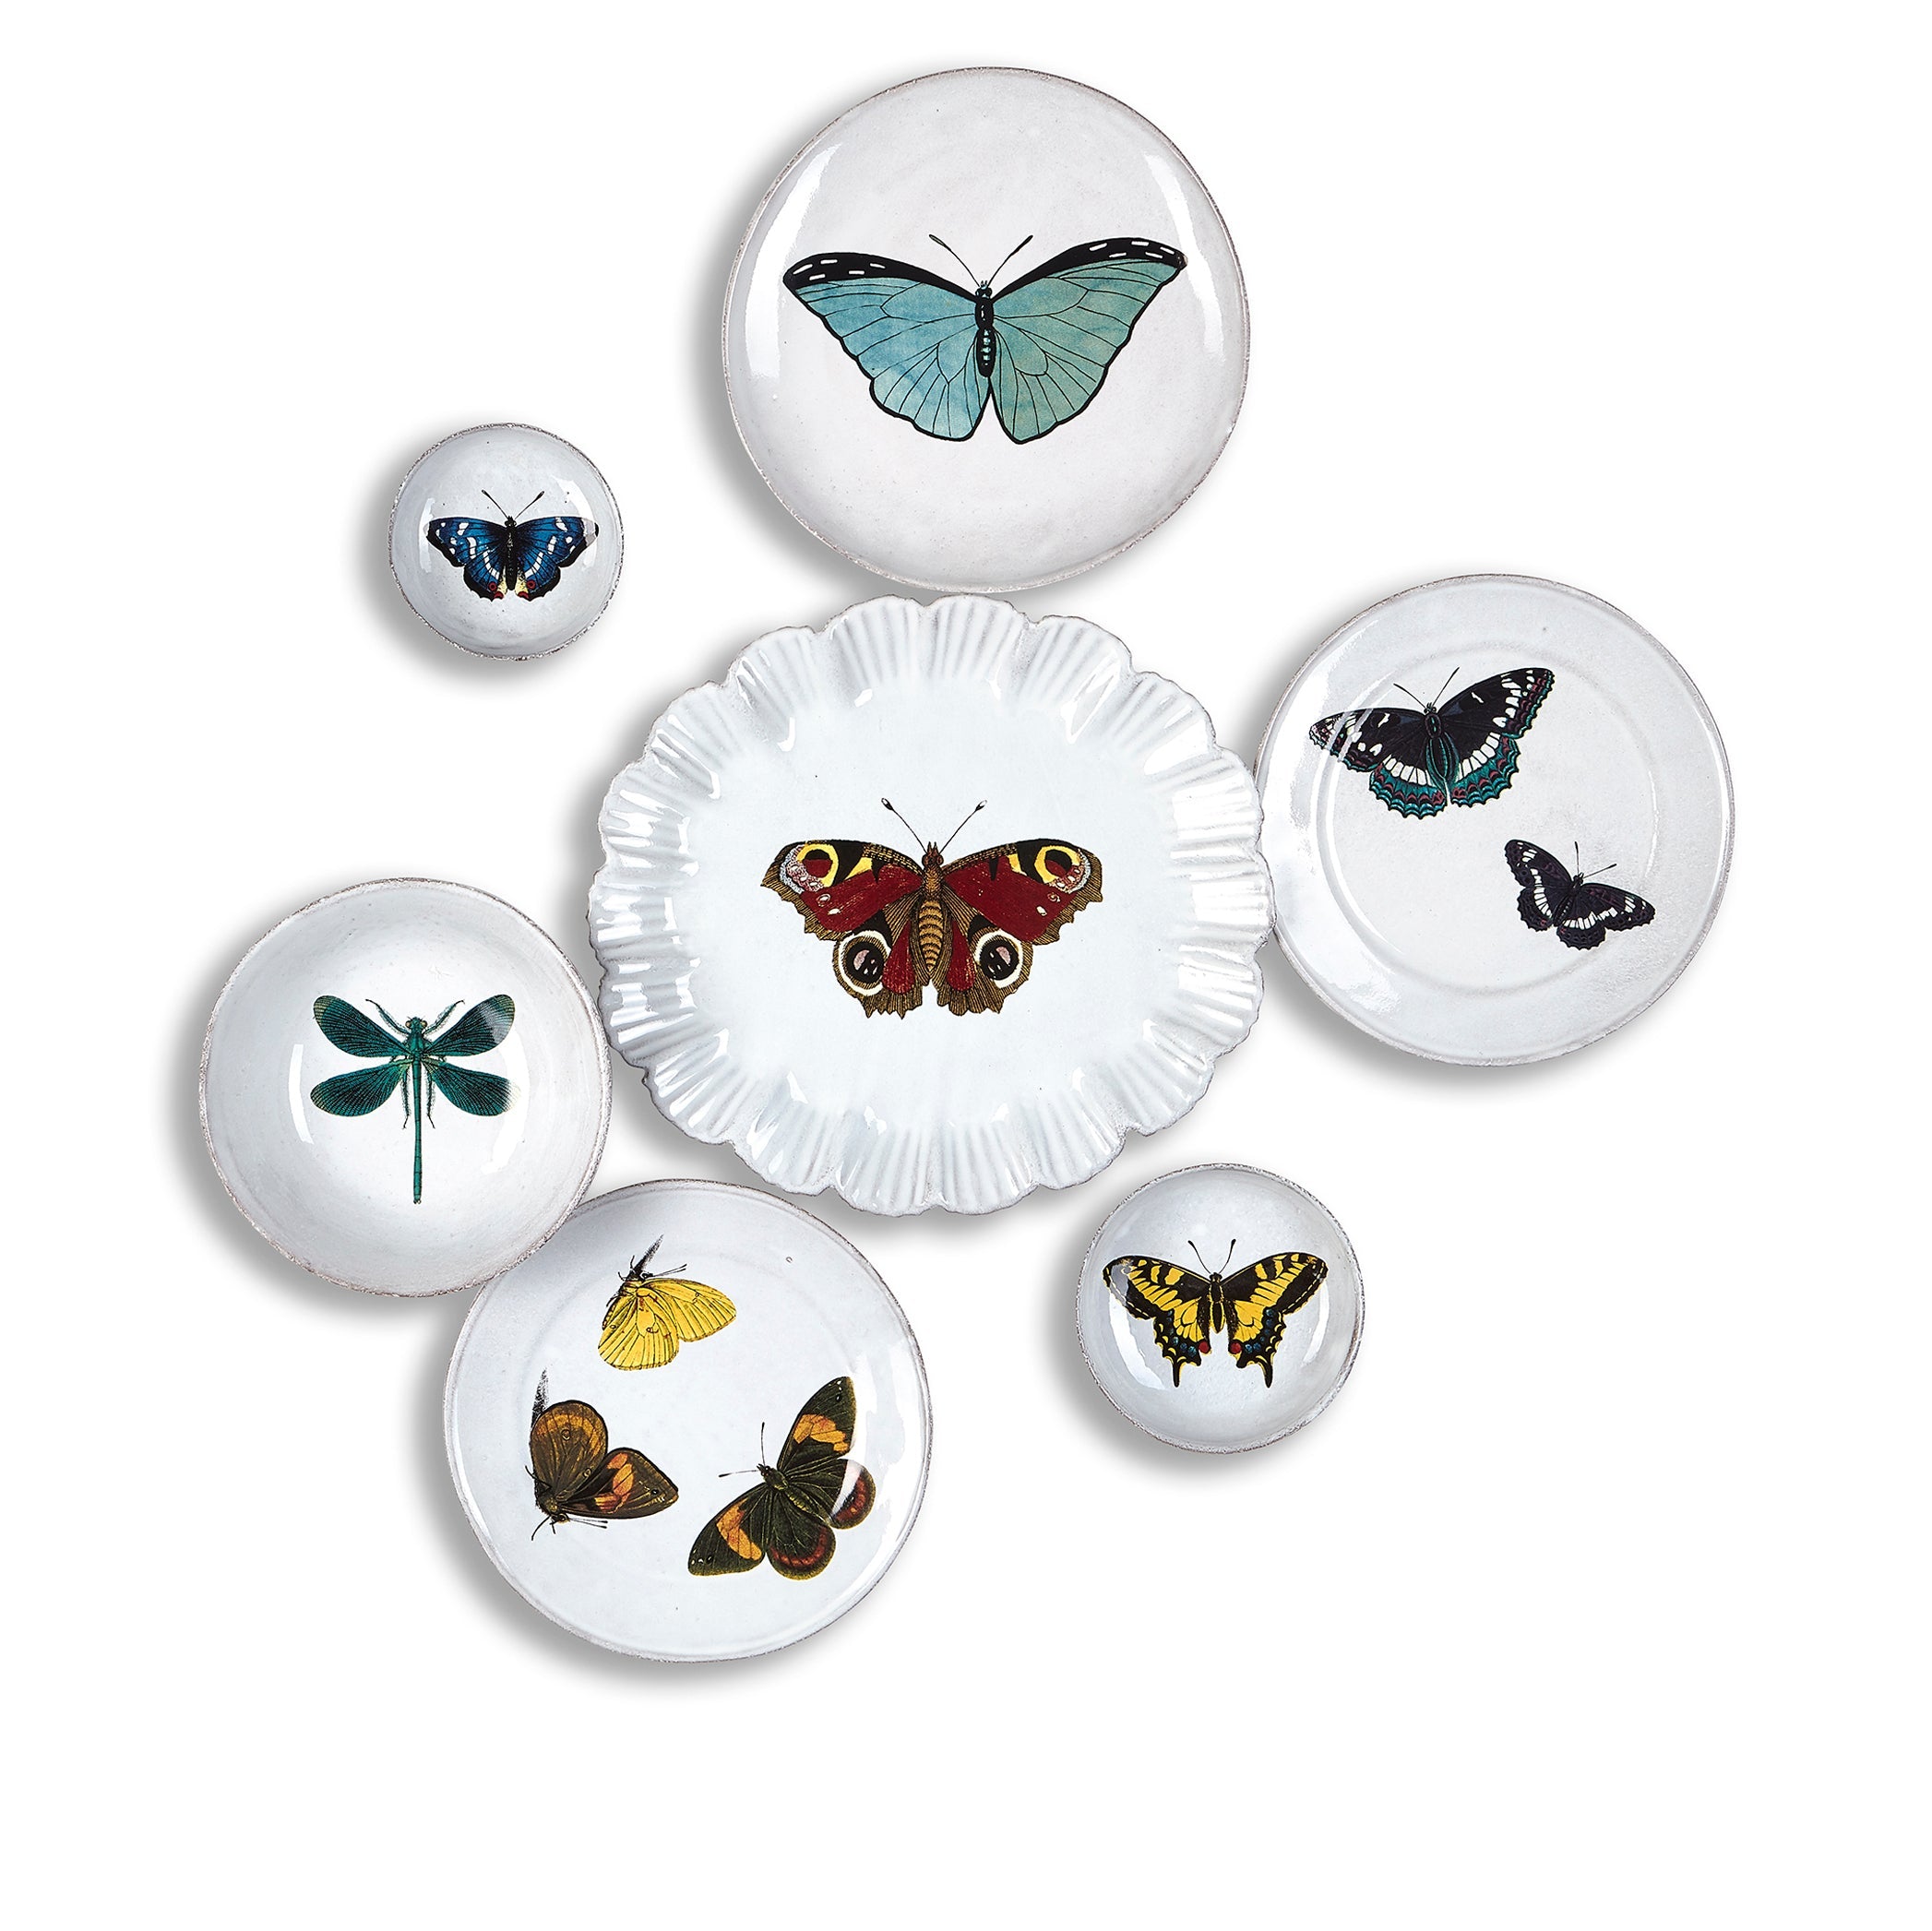 Apollo Butterfly Plate by Astier de Villatte, 28.5cm